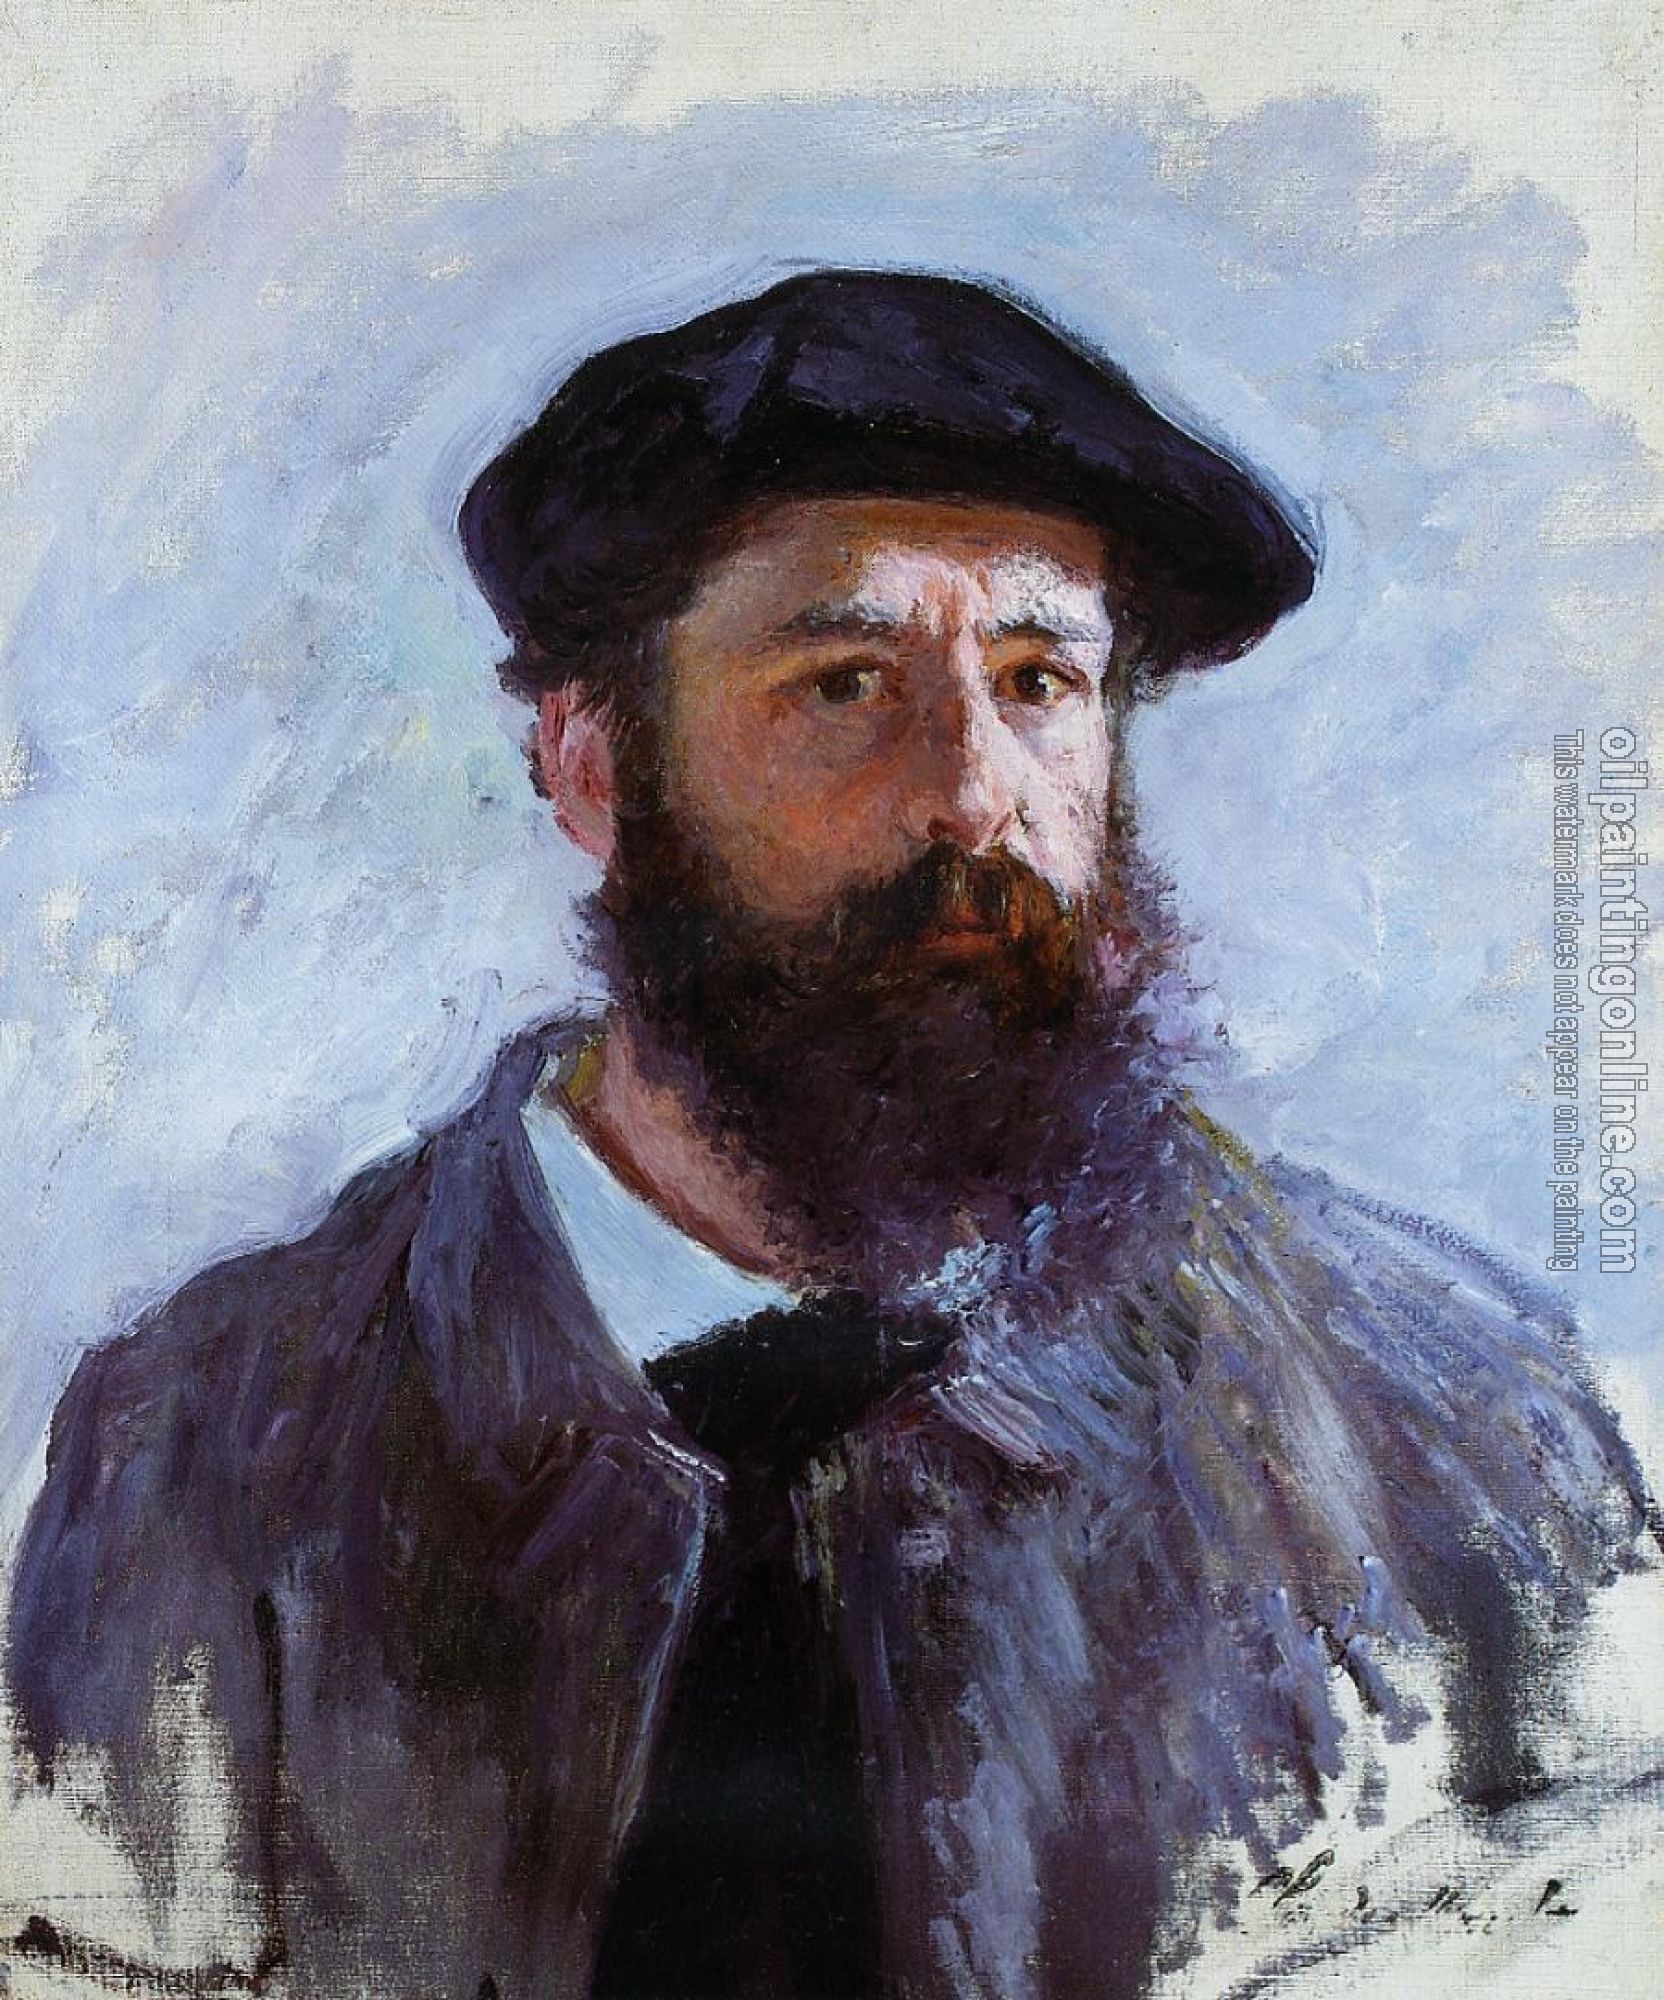 Monet, Claude Oscar - Self Portrait with a Beret